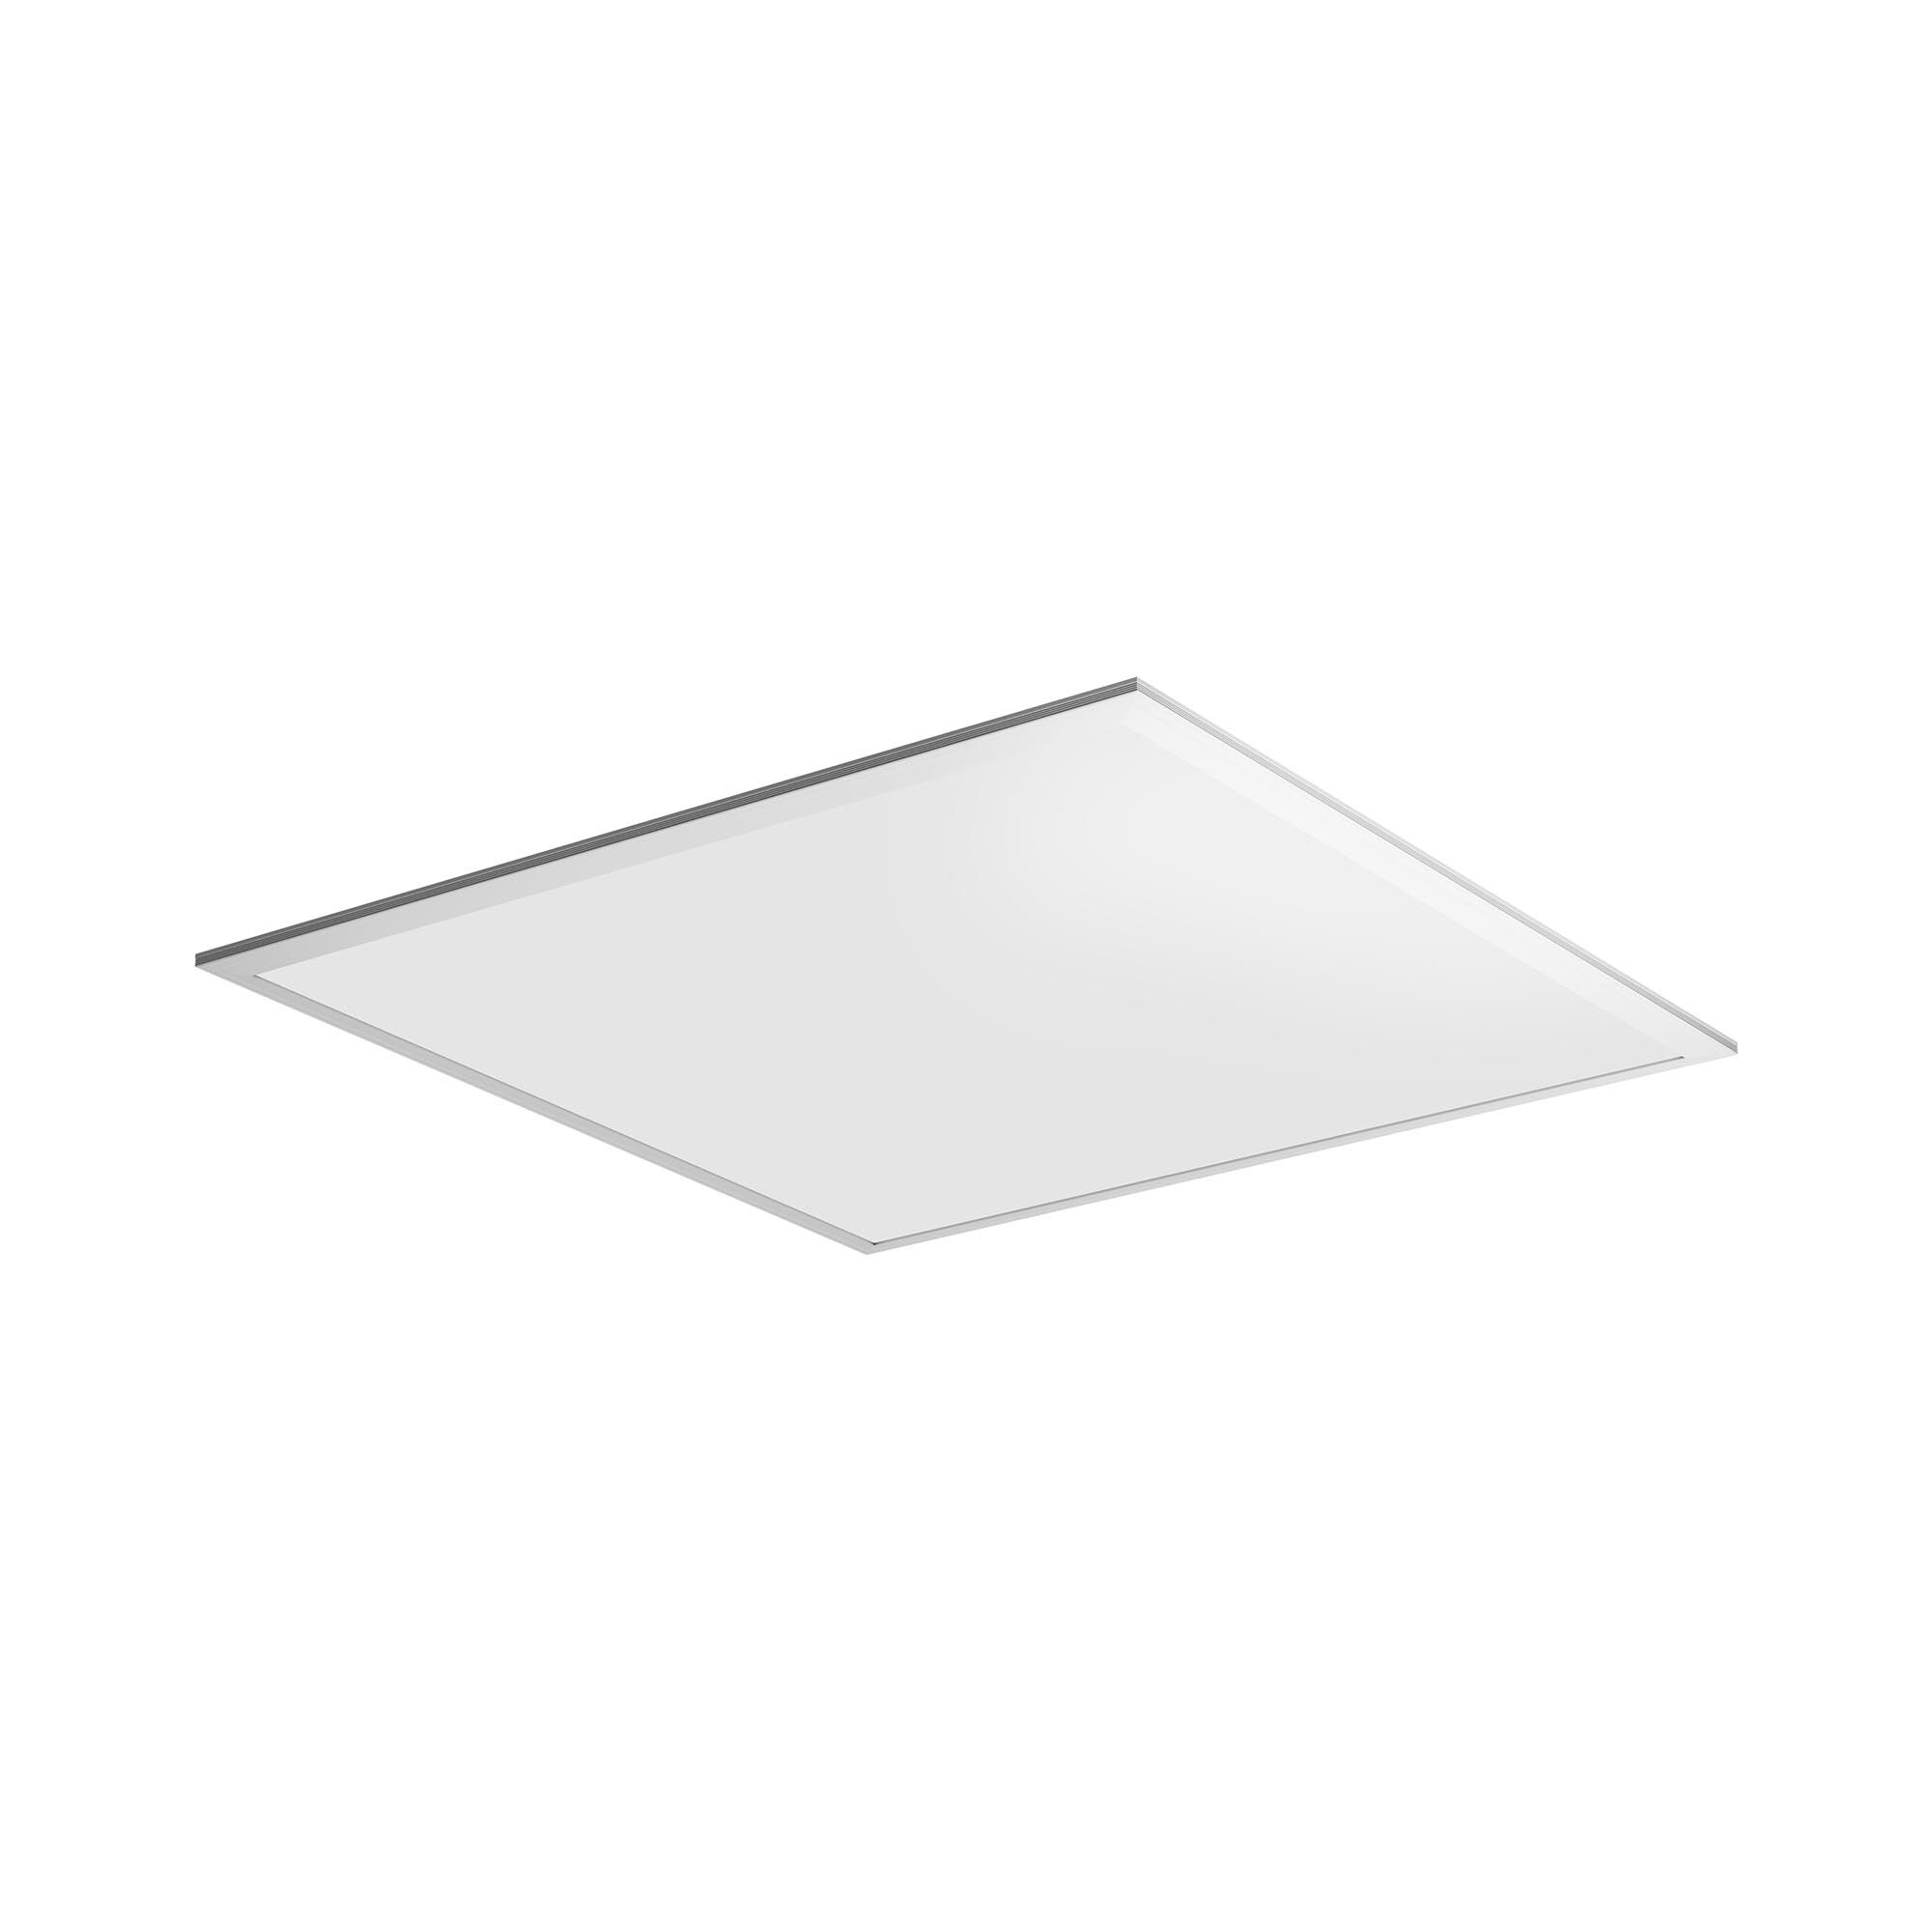 Fromm & Starck LED-panel - 62 x 62 cm - 40 W - 3,800 lumen - 6,000 K (kald hvit) 10260101